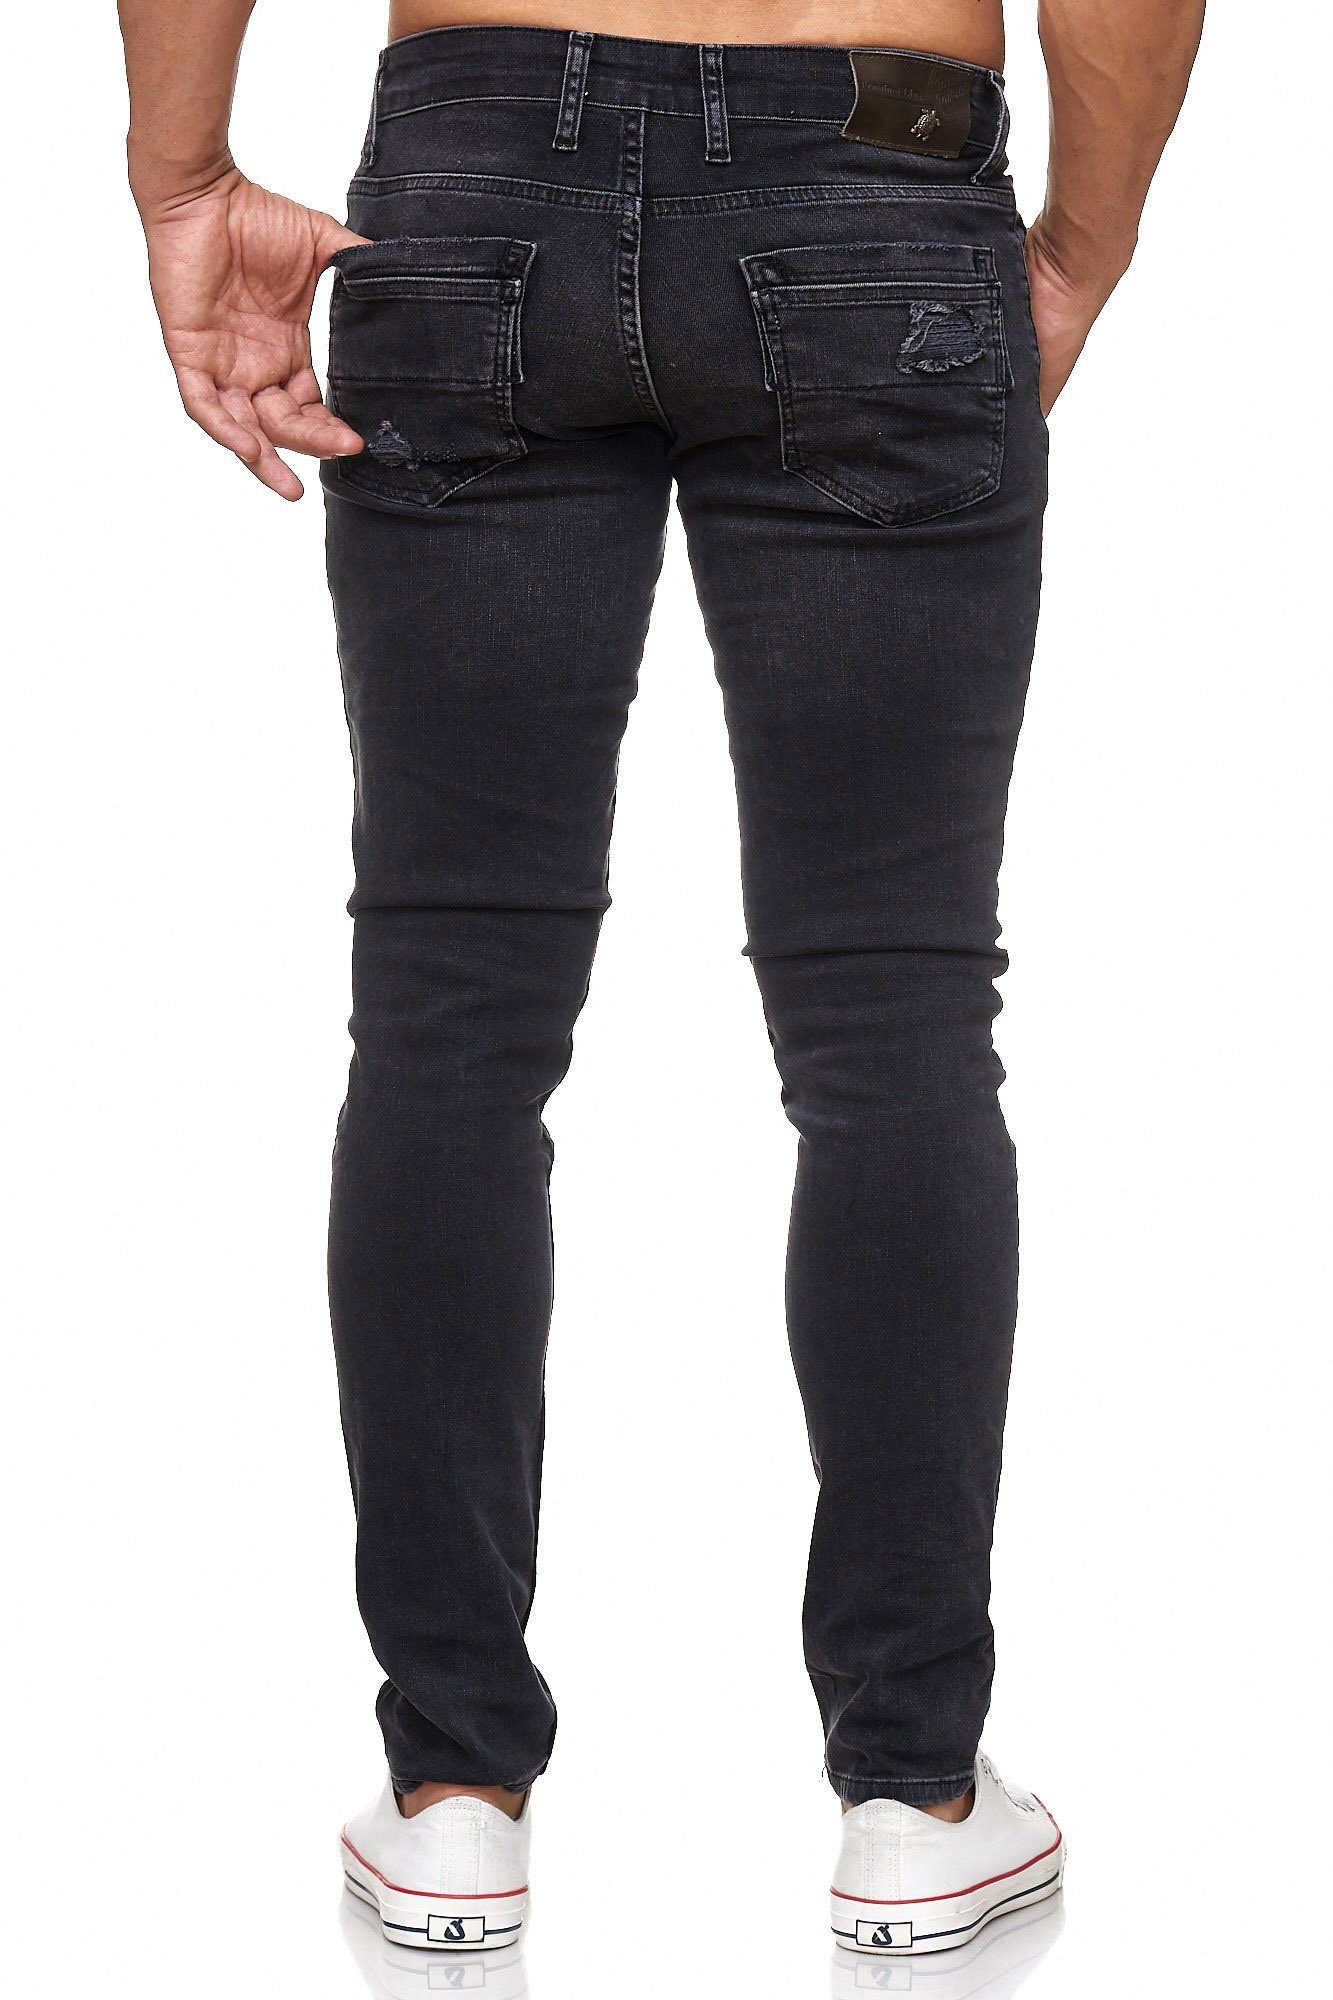 Tazzio Slim-fit-Jeans 17502 schwarz Destroyed-Look im